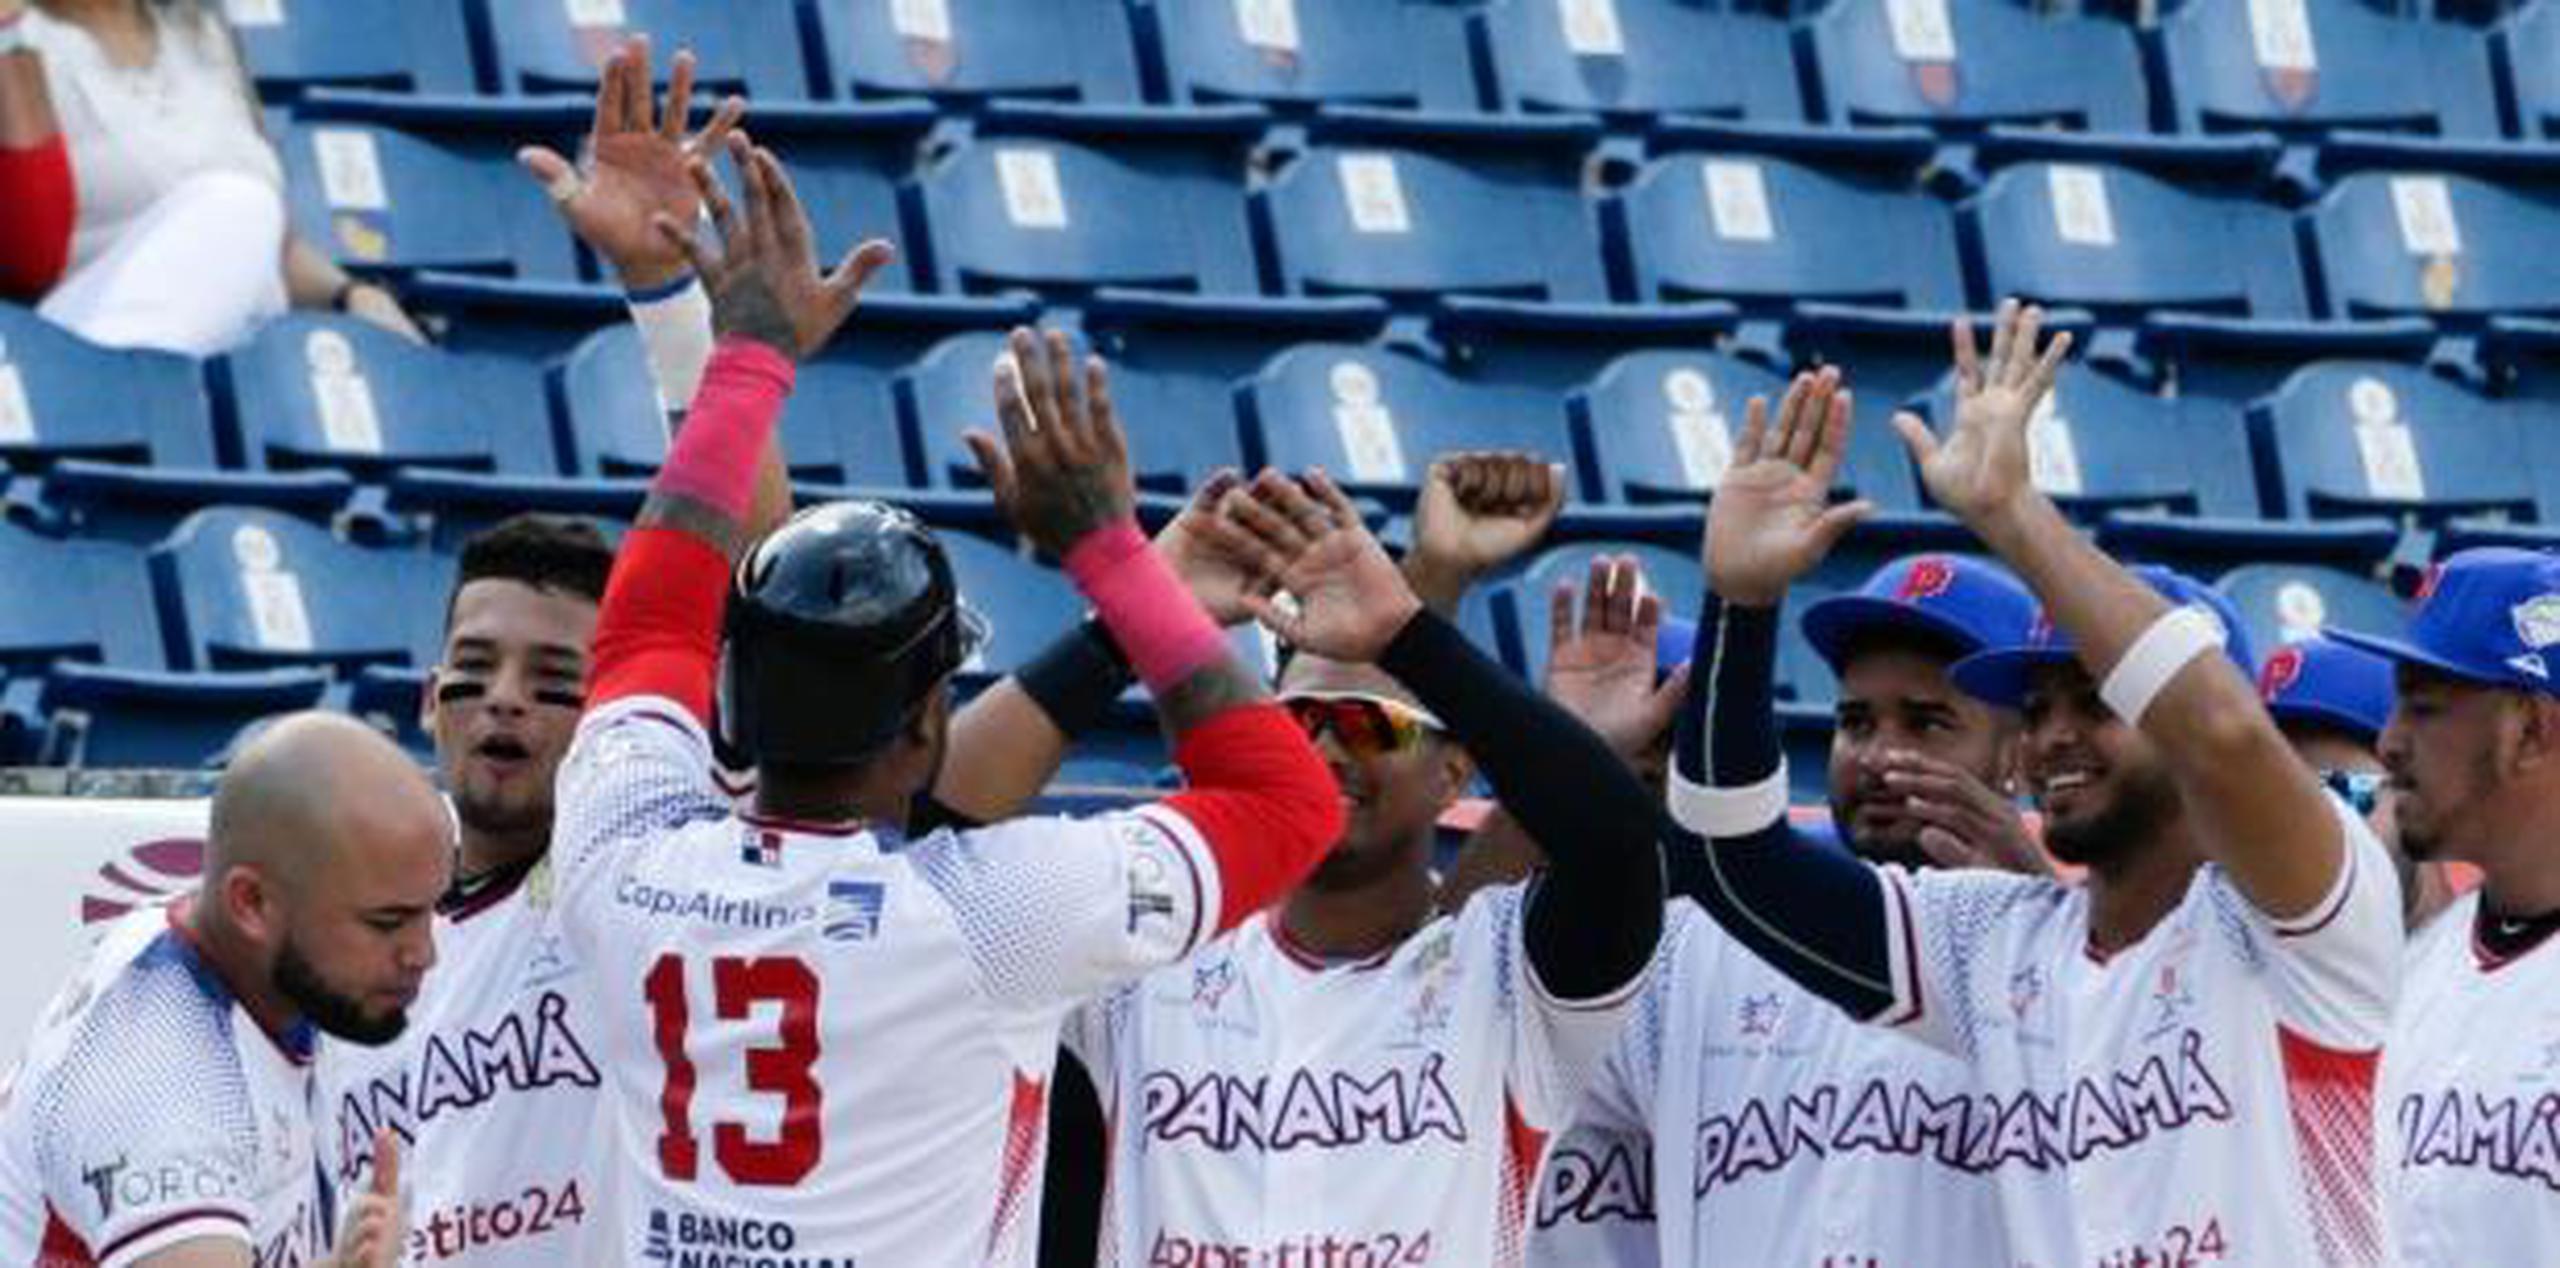 Panamá finalizó el campeonato con marca de 4-1, luego de perder solamente ante República Dominicana en la ronda preliminar. (AP)